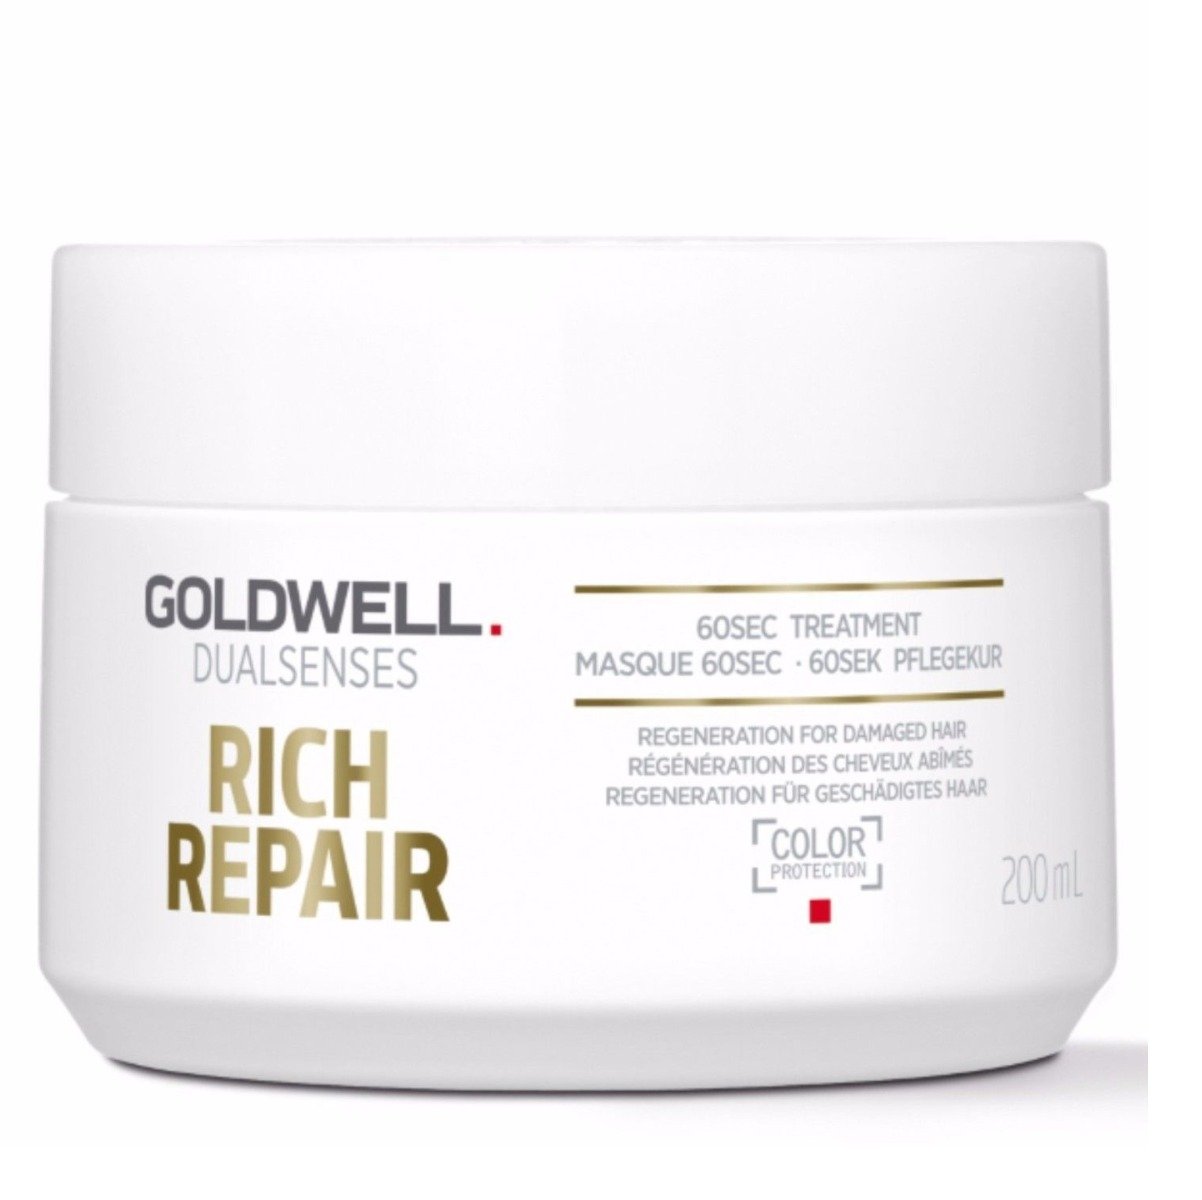 Goldwell Dual Senses Rich Repair Treatment Masque 60SEC 200ml x 1 - On Line Hair Depot